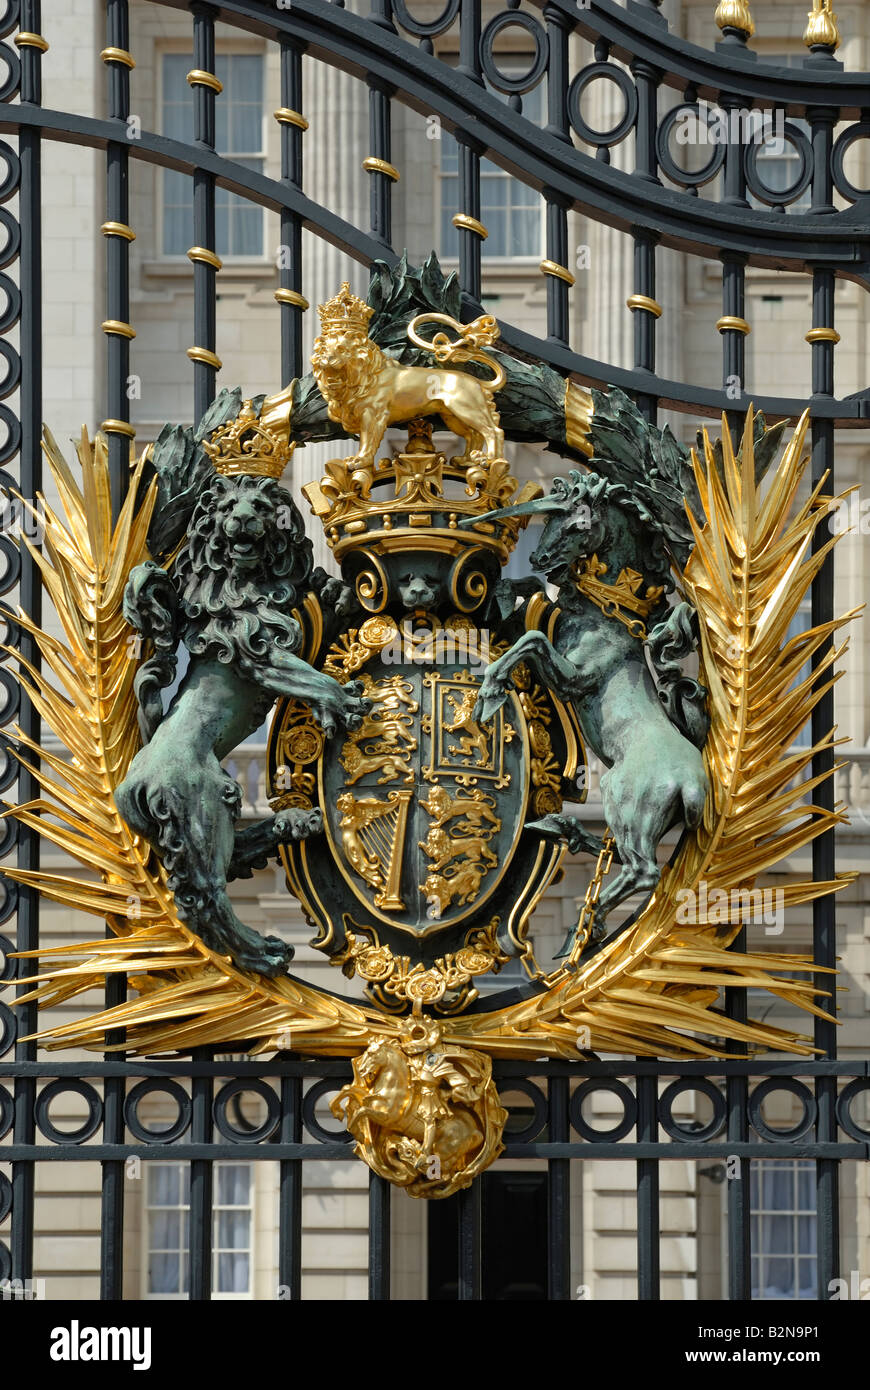 Crest and Gates Buckingham Palace, London Stock Photo